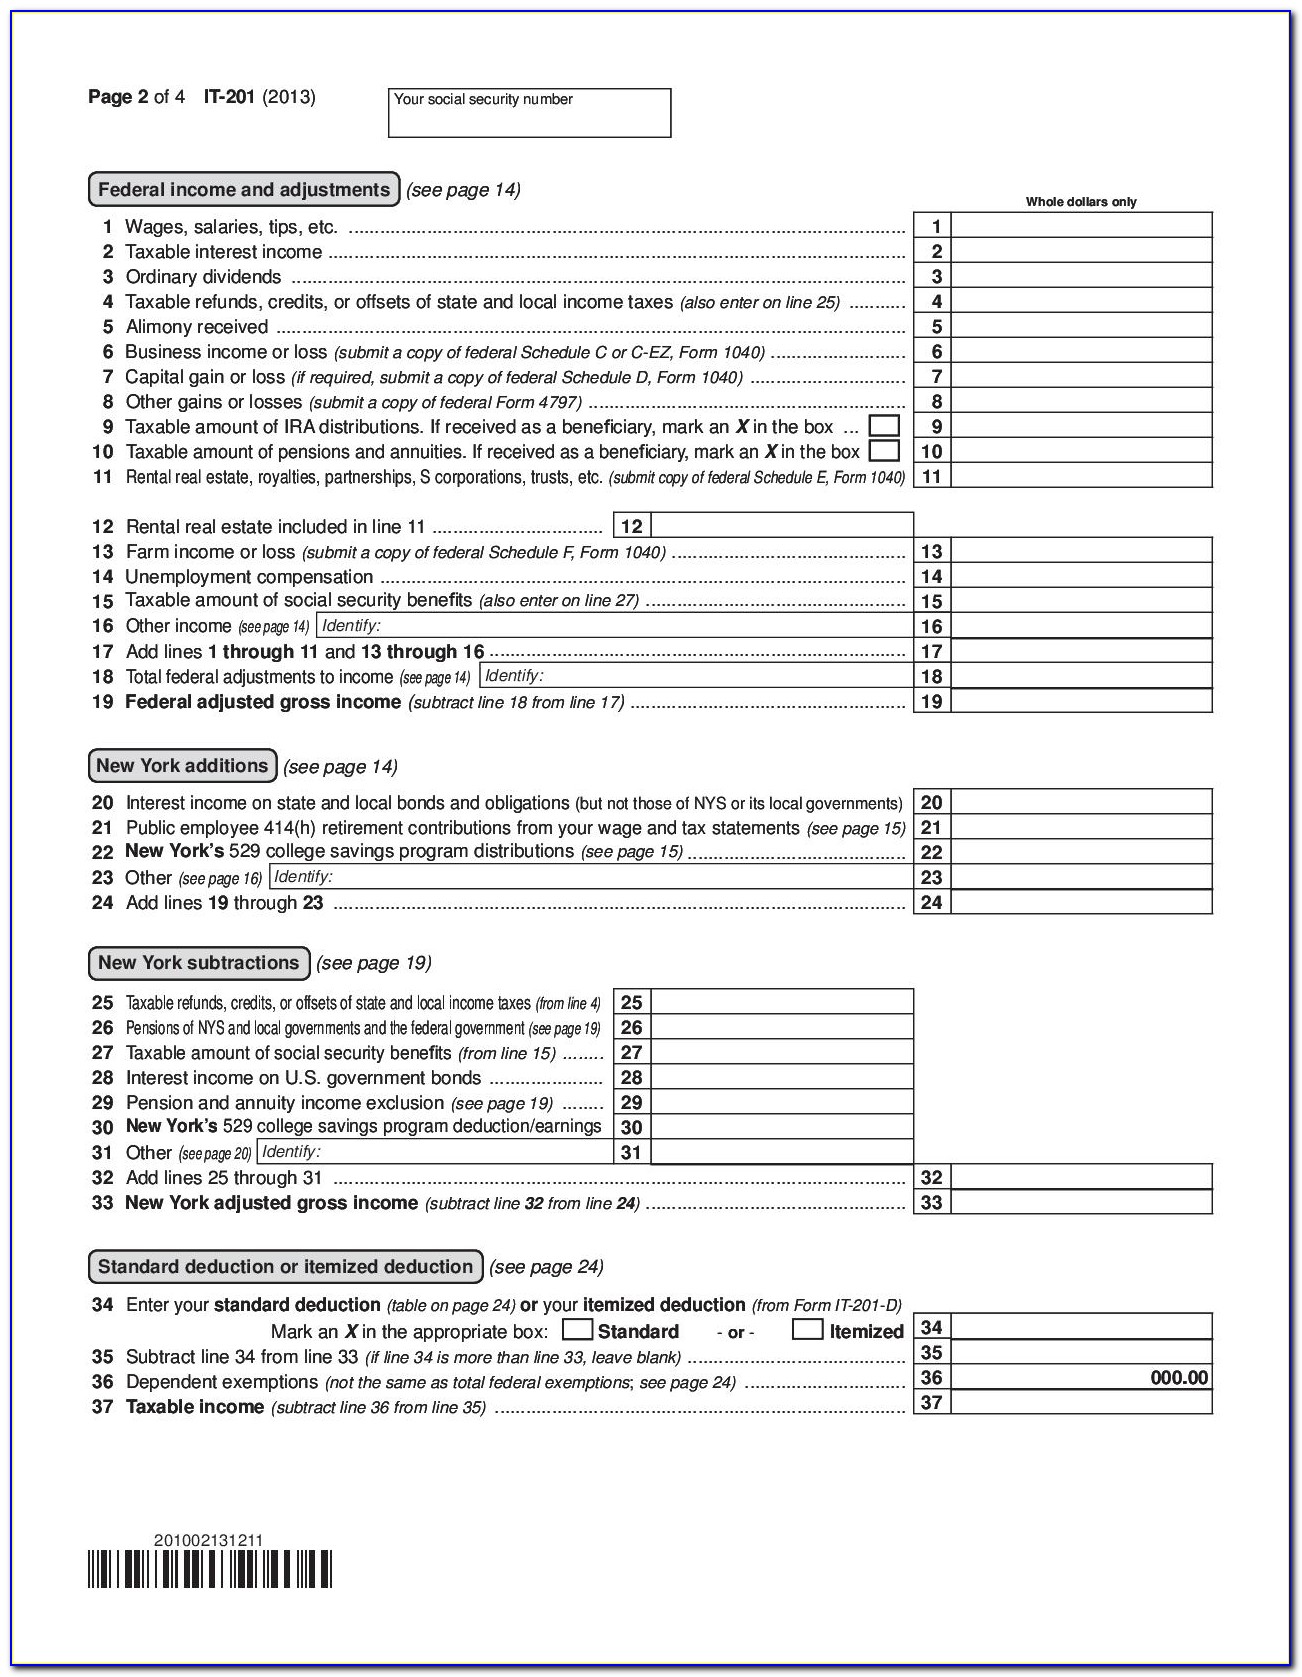 Tax Form 1040a Vs 1040